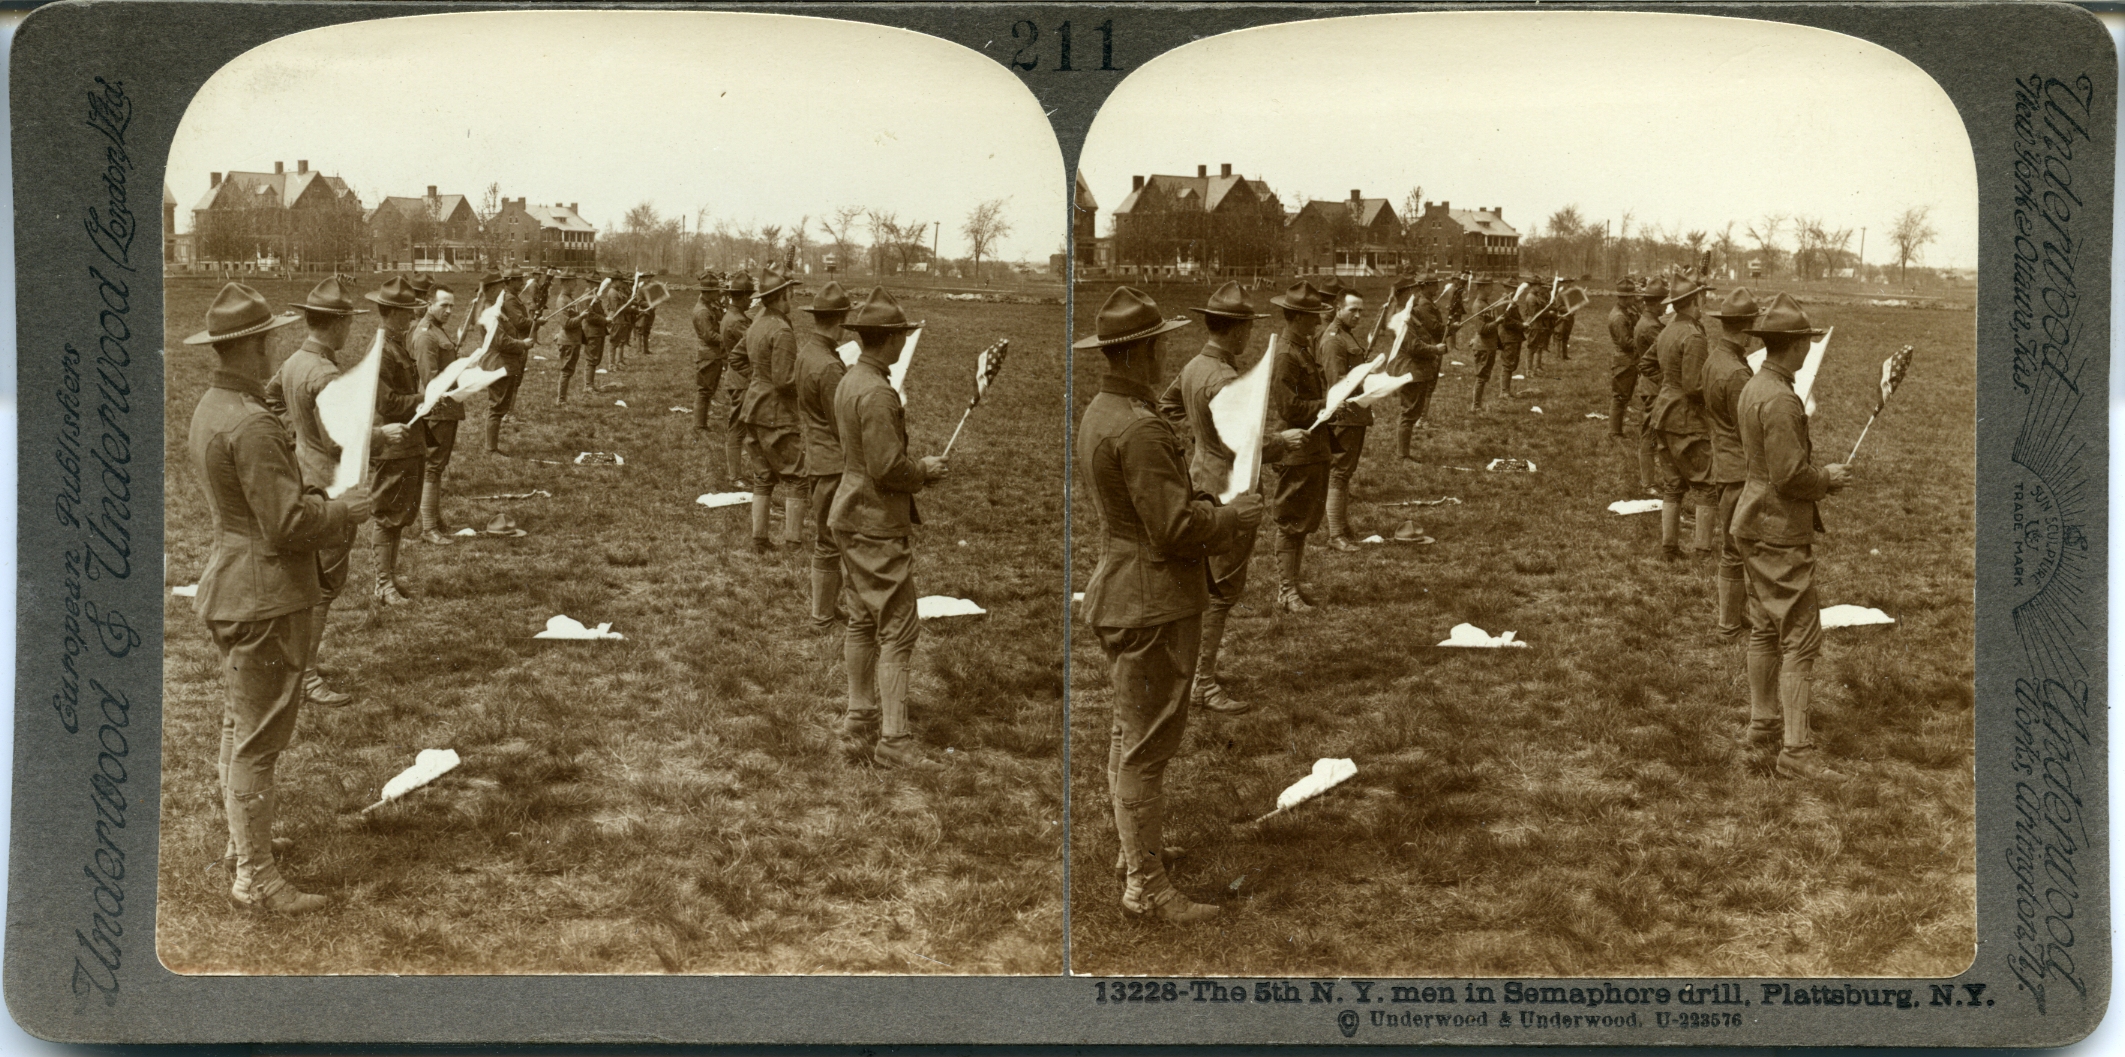 The 5th N.Y. men in Semaphore drill, Plattsburg, N.Y.